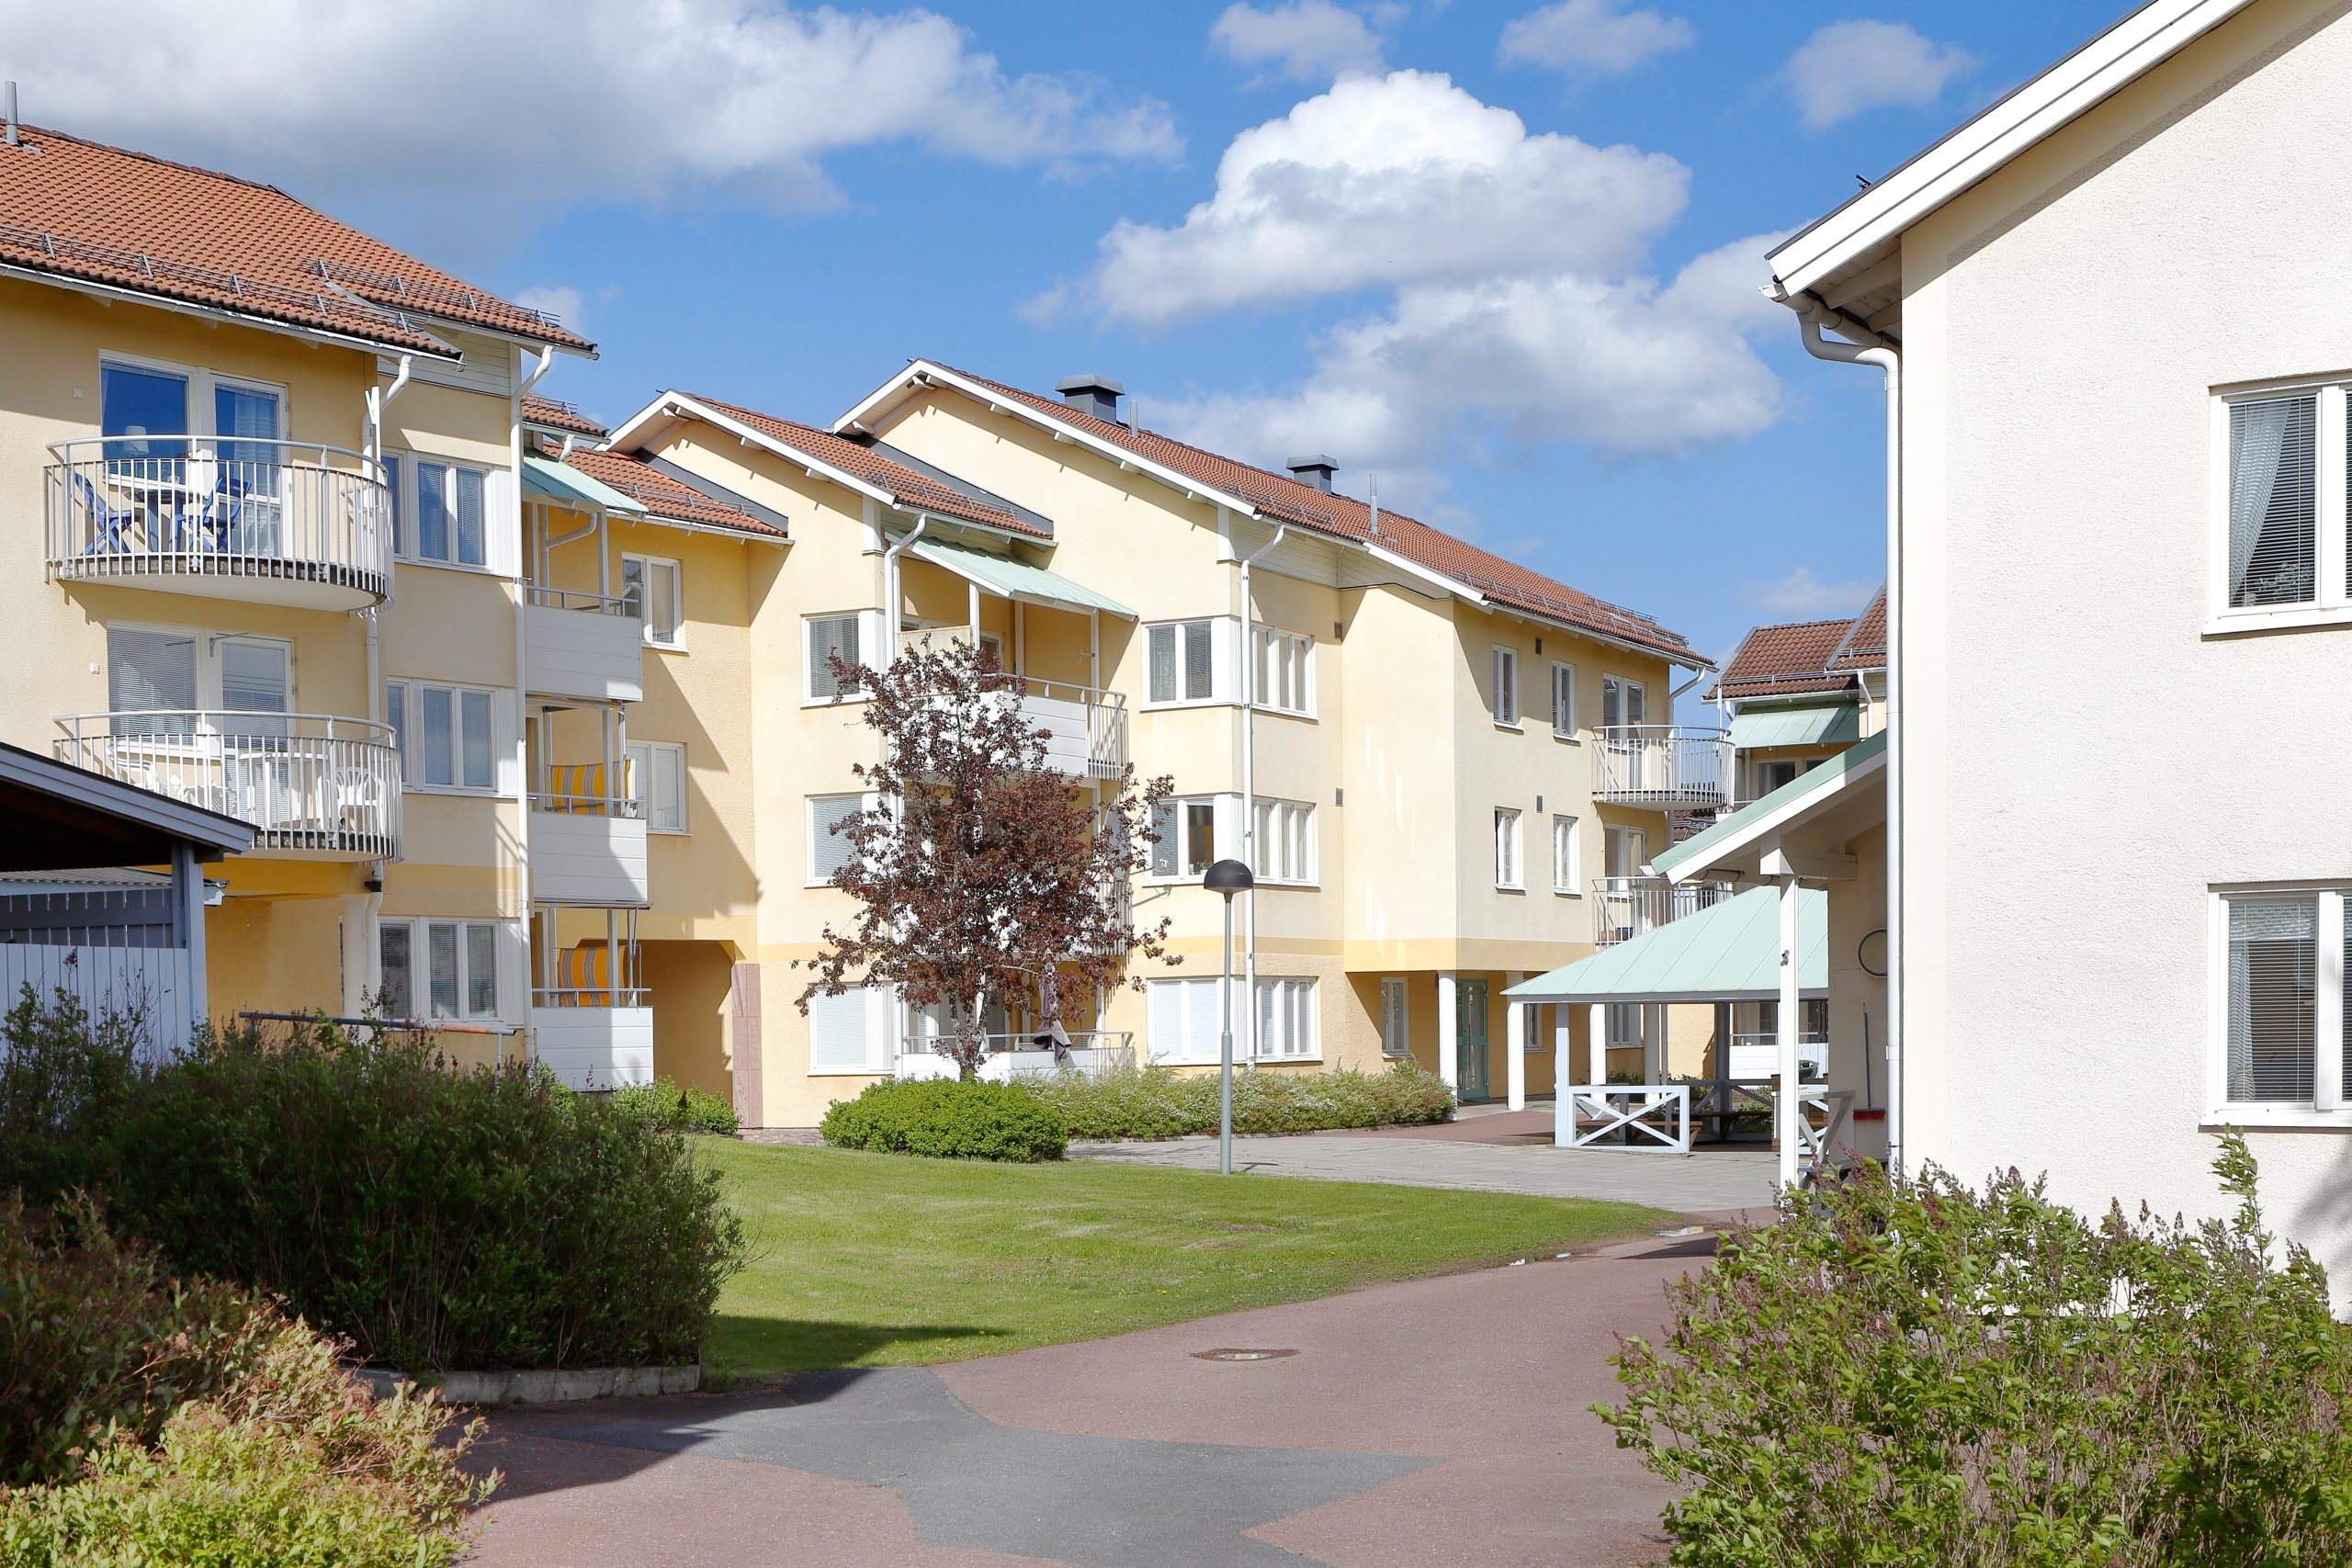 Ny statistik visar att samtliga lägenheter på bottenplan alltid bör radonmätas i flerbostadshus